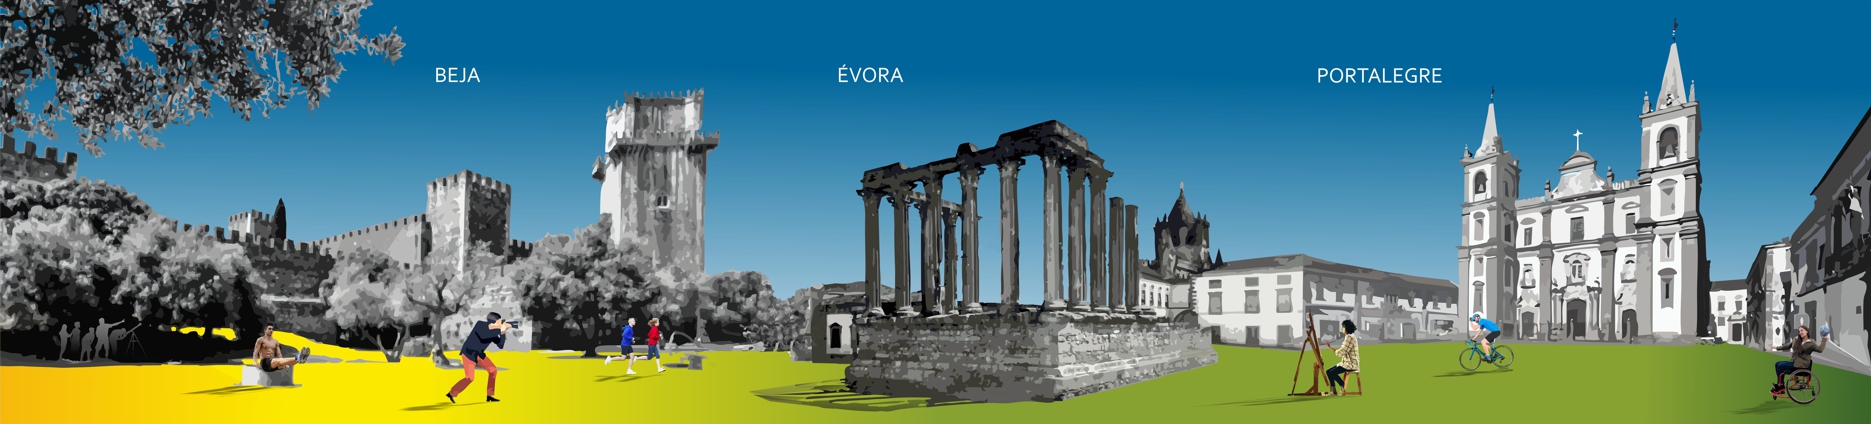 Imgaem gráfica com representação dos pontos históricos de Beja, Portalegre e Évora